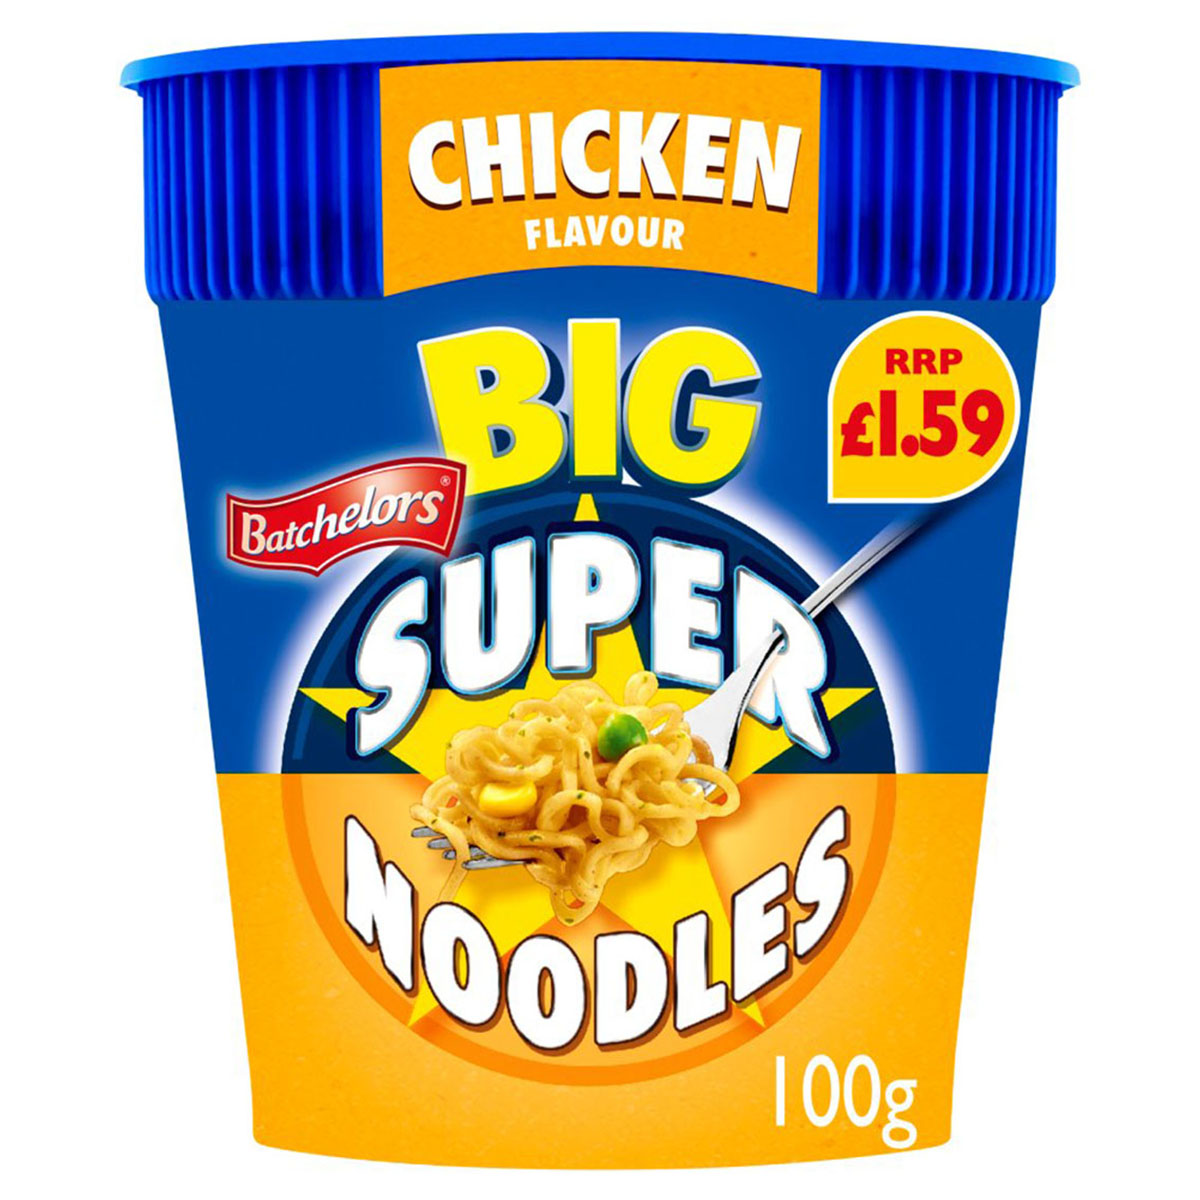 Batchelors - Big Super Noodles Chicken Flavour Instant Noodle Pot - 100g - Continental Food Store